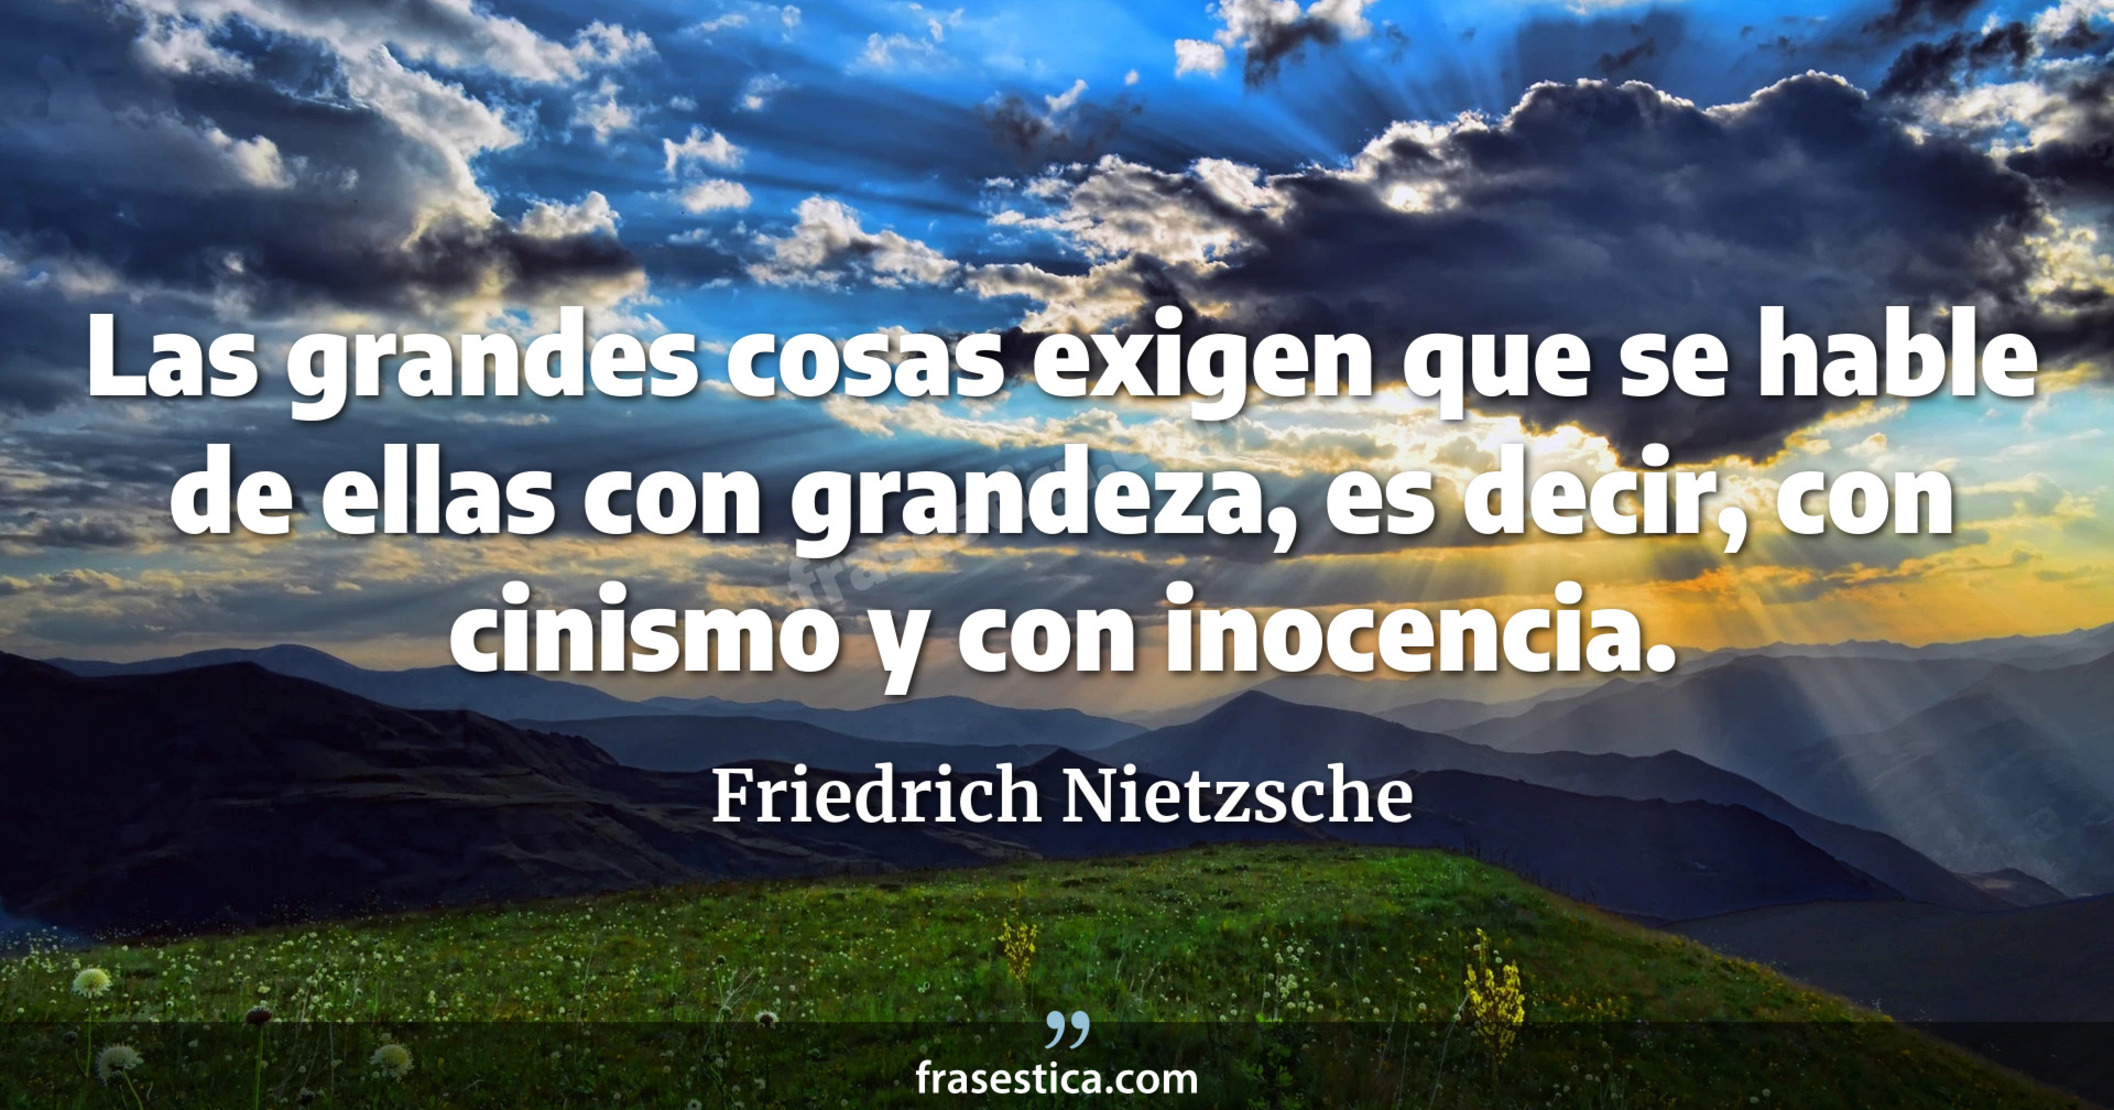 Las grandes cosas exigen que se hable de ellas con grandeza, es decir, con cinismo y con inocencia. - Friedrich Nietzsche